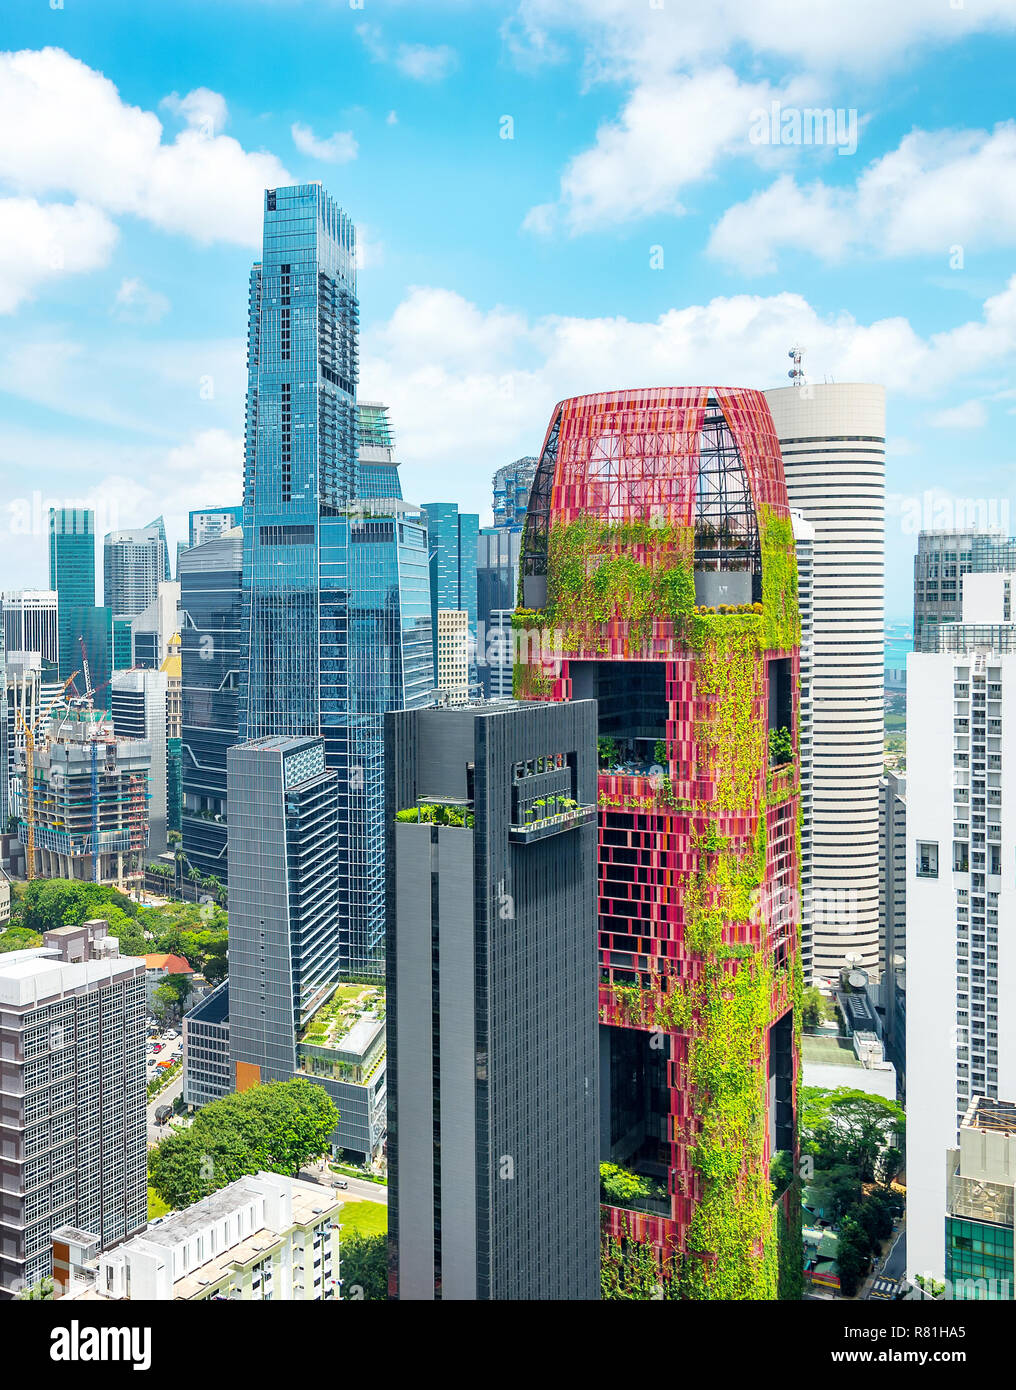 Antenne Stadtbild von Singapur Metropole, Geschäftsviertel mit moderner Architektur, Wolkenkratzer, Gebäude mit Gärten Stockfoto